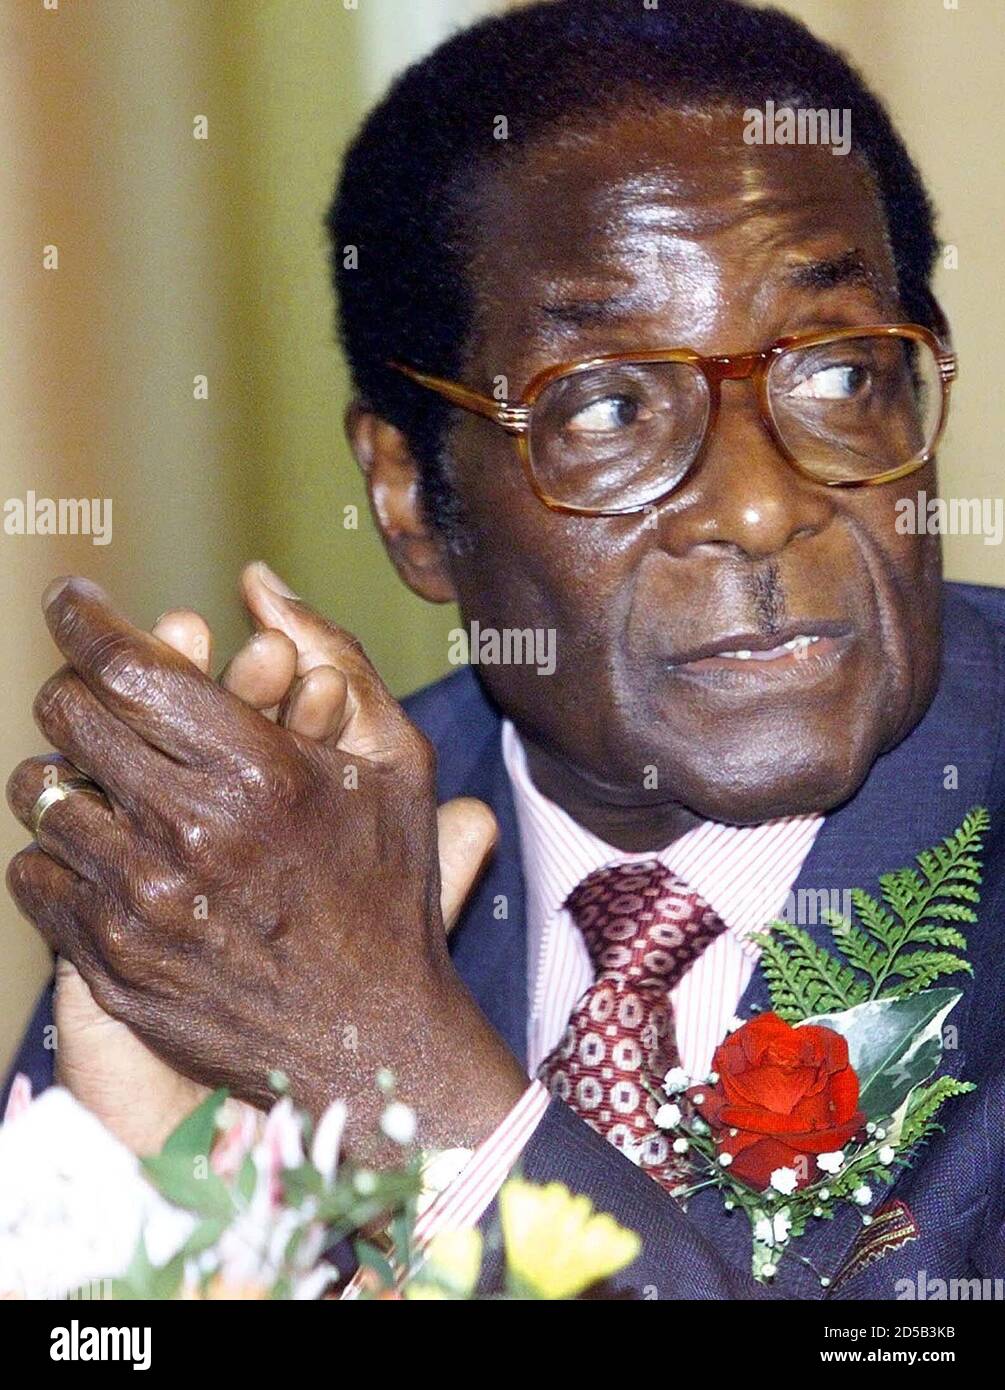 Der simbabwische Präsident Robert Mugabe beobachtet Verfahren, in denen er sich an Unterstützer wandte und das Wahlprogramm seiner Partei am 3. Mai in Harare lancierte. Mugabe hat am Mittwoch die Commonwealth-Kritik beiseite gewischt, sich geweigert, Kriegsveteranen des Befreiungskrieges zu beweisen, ihre Besetzung weißer Farmen zu beenden, und gesagt, Weiße könnten das Land verlassen. Im Gefolge einer äußerst kritischen Stellungnahme des Commonwealth am Dienstag sagte Mugabe den Kriegsveteranen und Parteiunterstützern, er sei der Verfechter von Demokratie und Gerechtigkeit in Simbabwe. Stockfoto